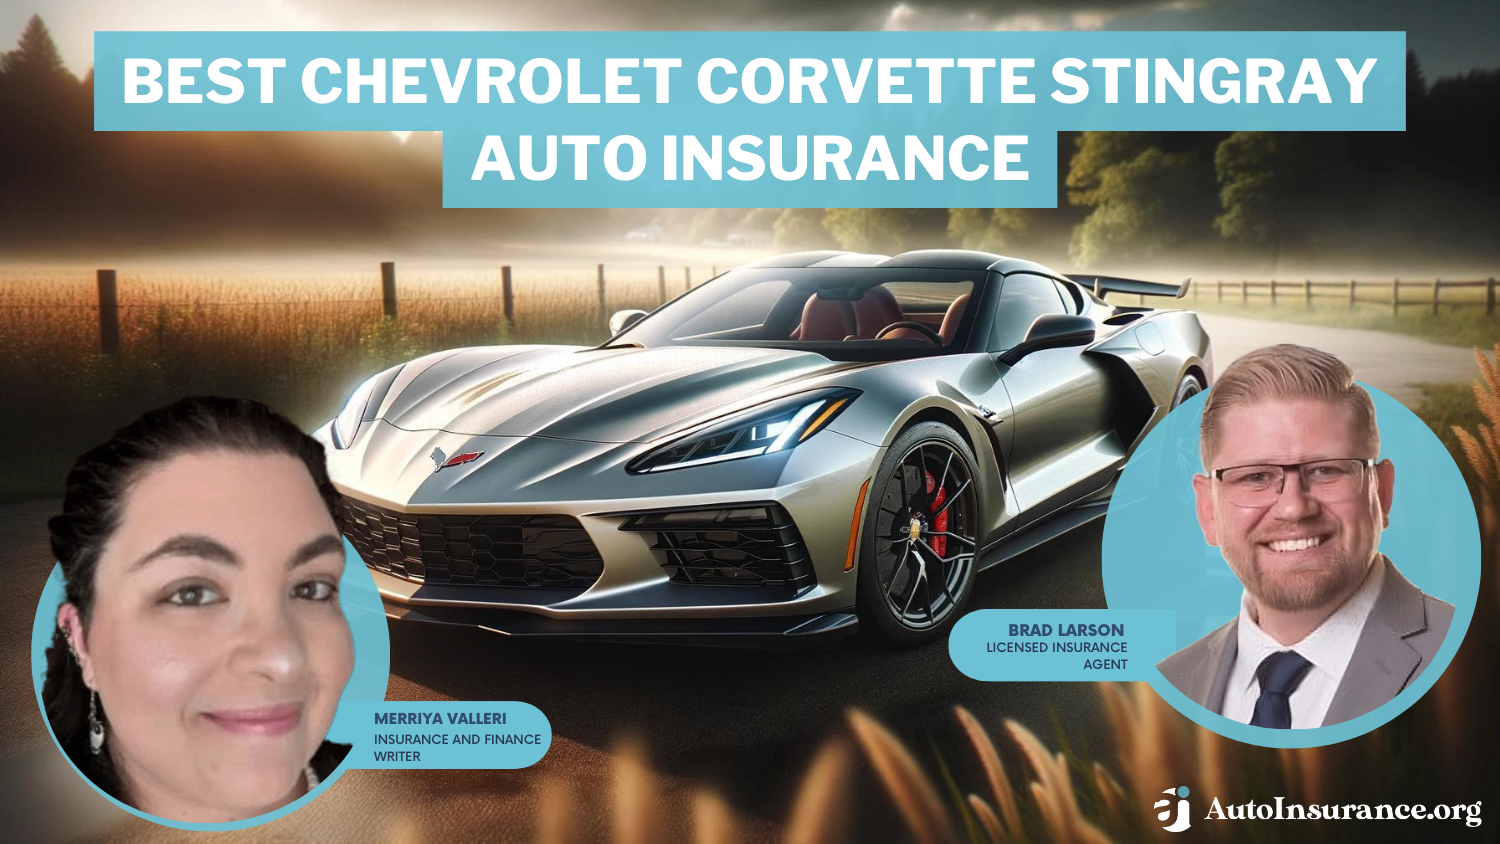 Best Chevrolet Corvette Stingray Auto Insurance: State Farm, Allstate, Progressive